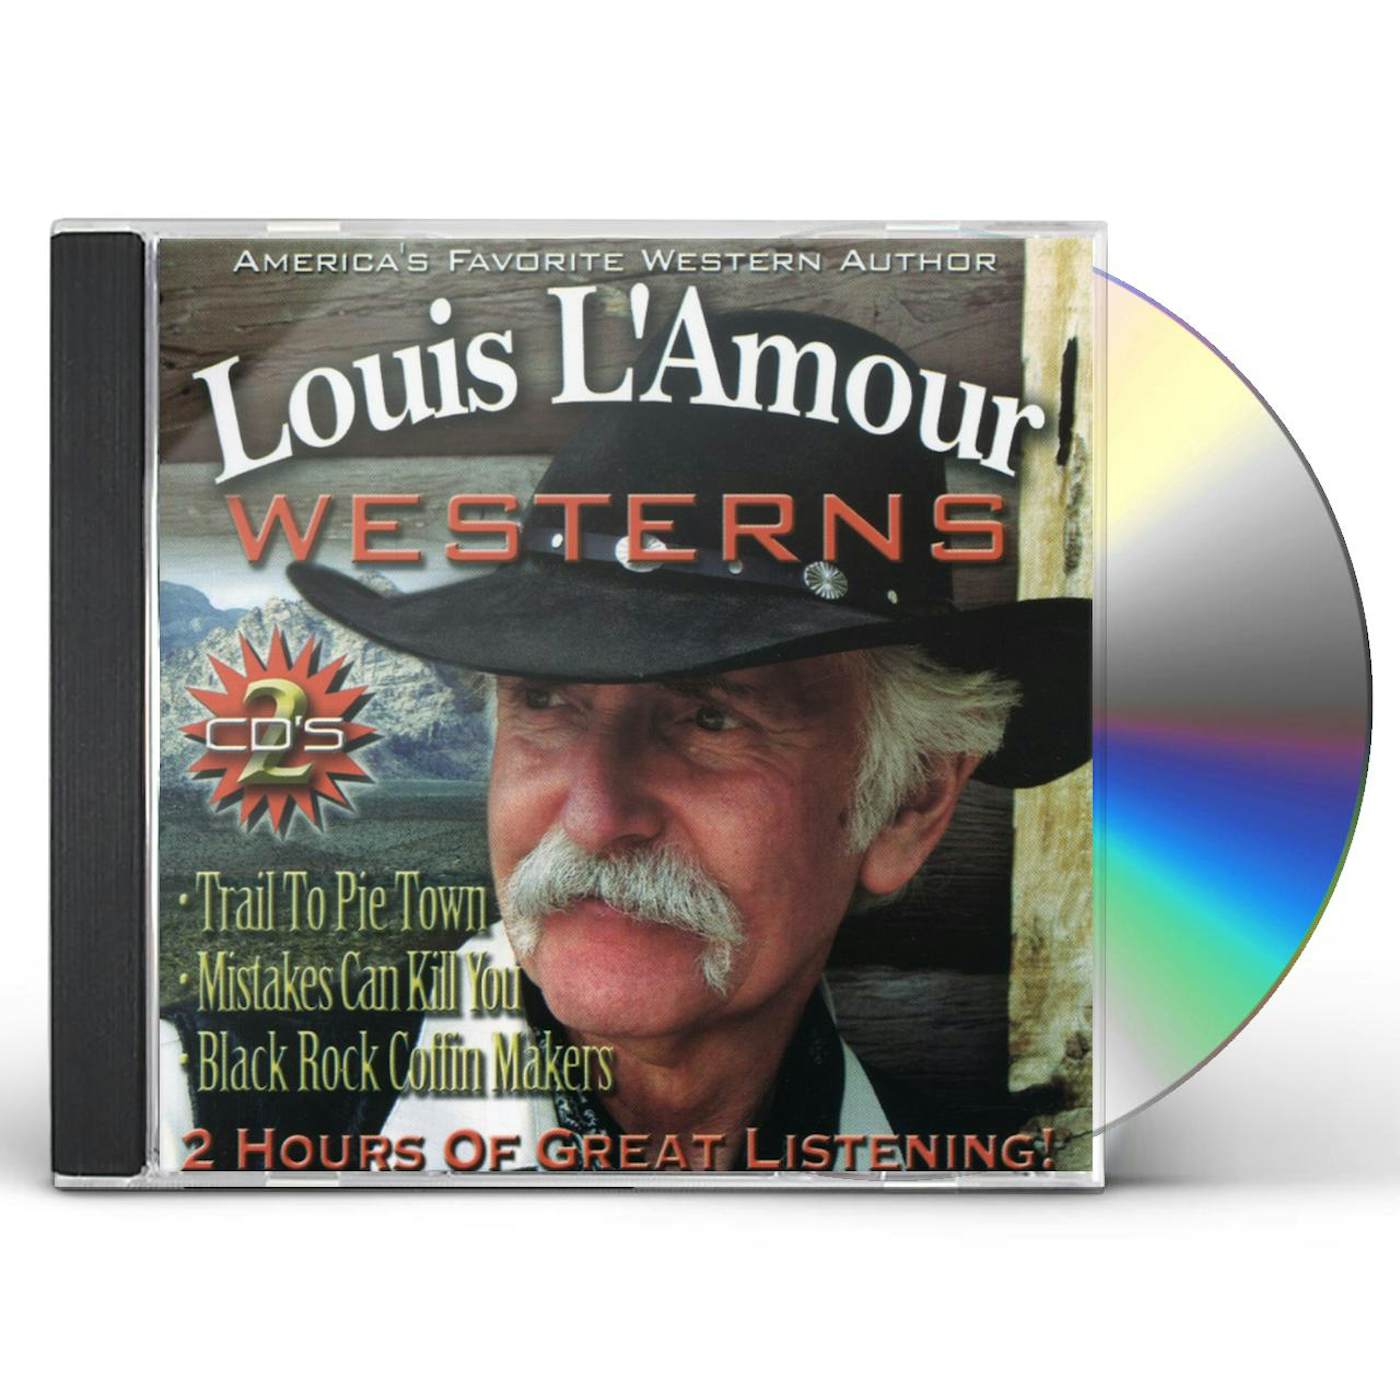 Louis L'Amour Westerns 1 by Louis L'Amour